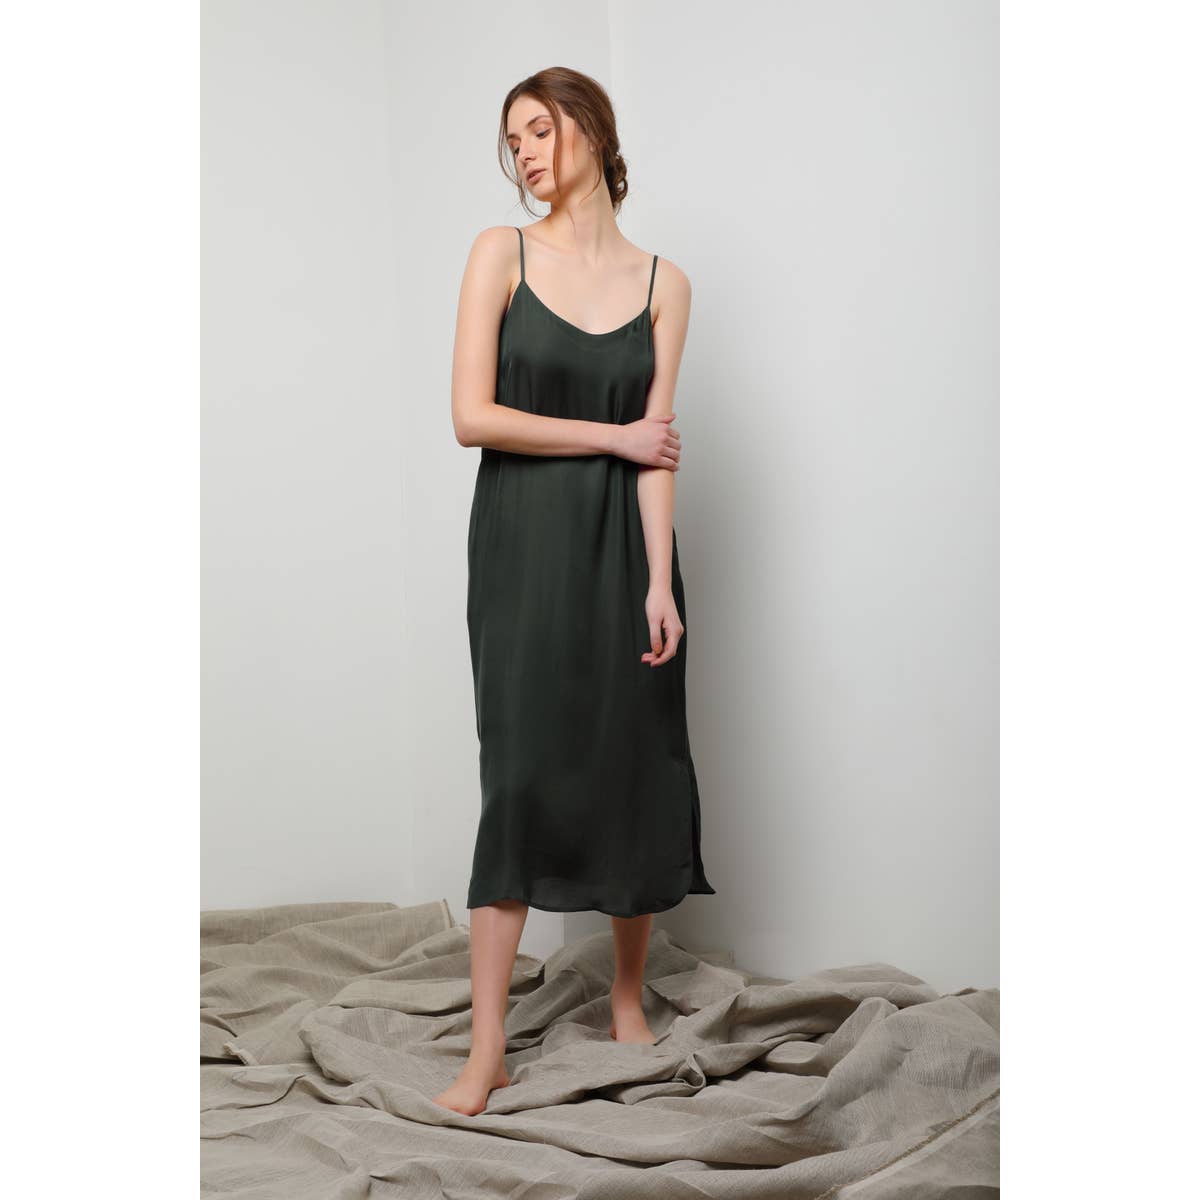 Easy Slip Dress - Olive Green